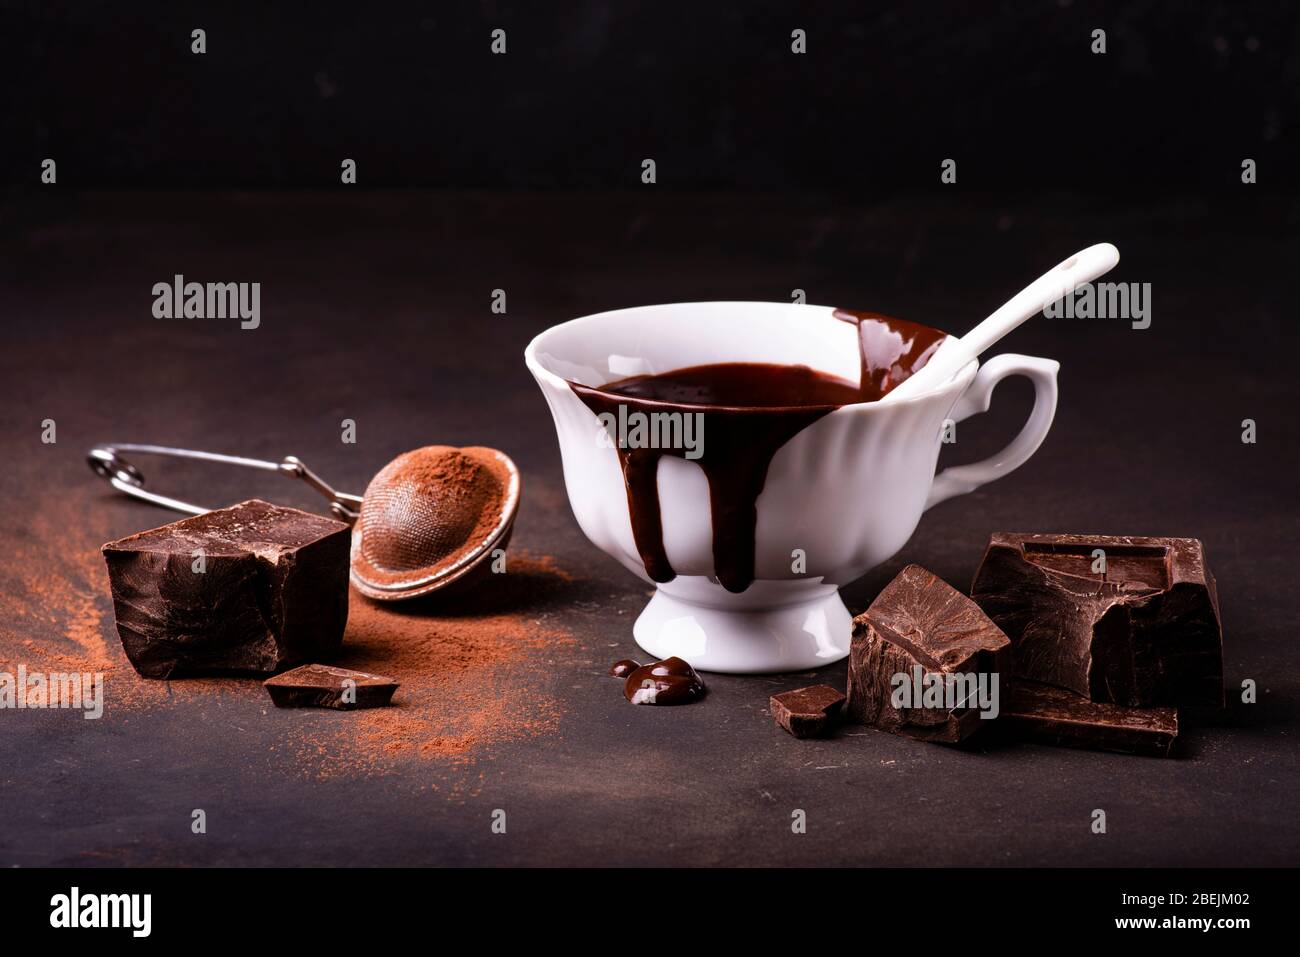 Auf einer dunklen rustikalen Oberfläche, eine Tasse heiße Schokolade, ein paar Stücke dunkle Schokolade und Kakaopulver Stockfoto